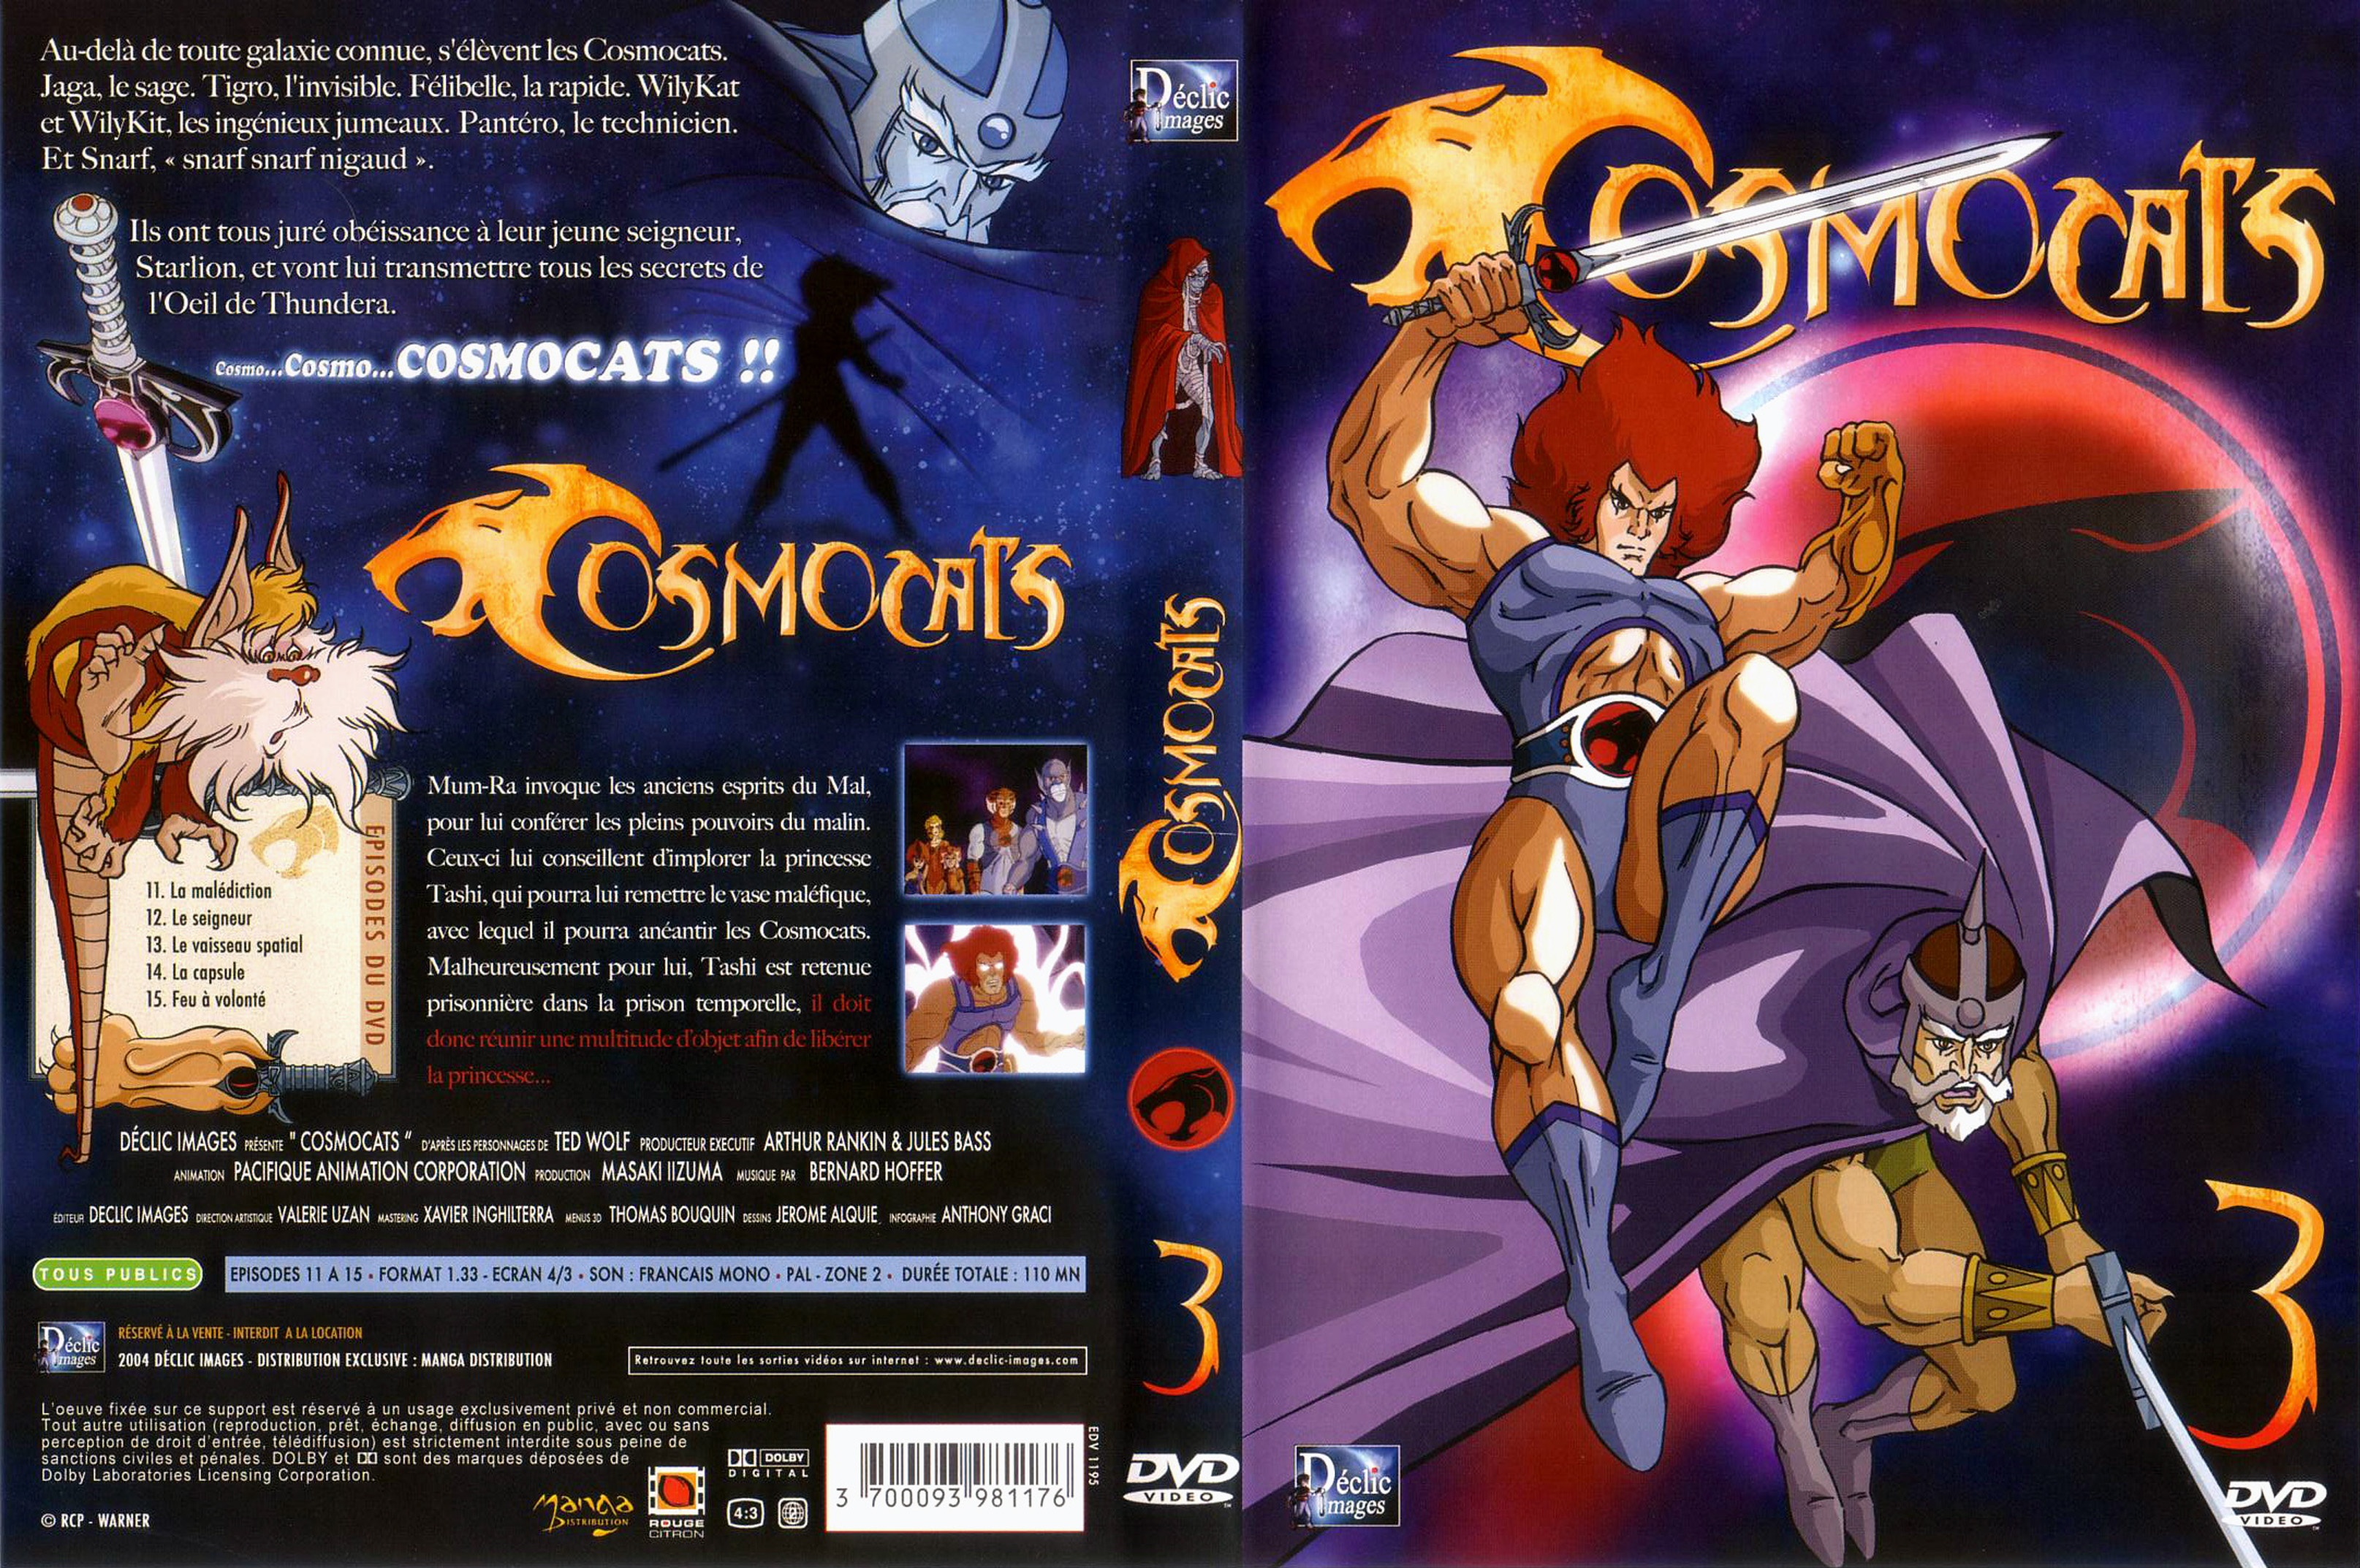 Jaquette DVD Cosmocats vol 03